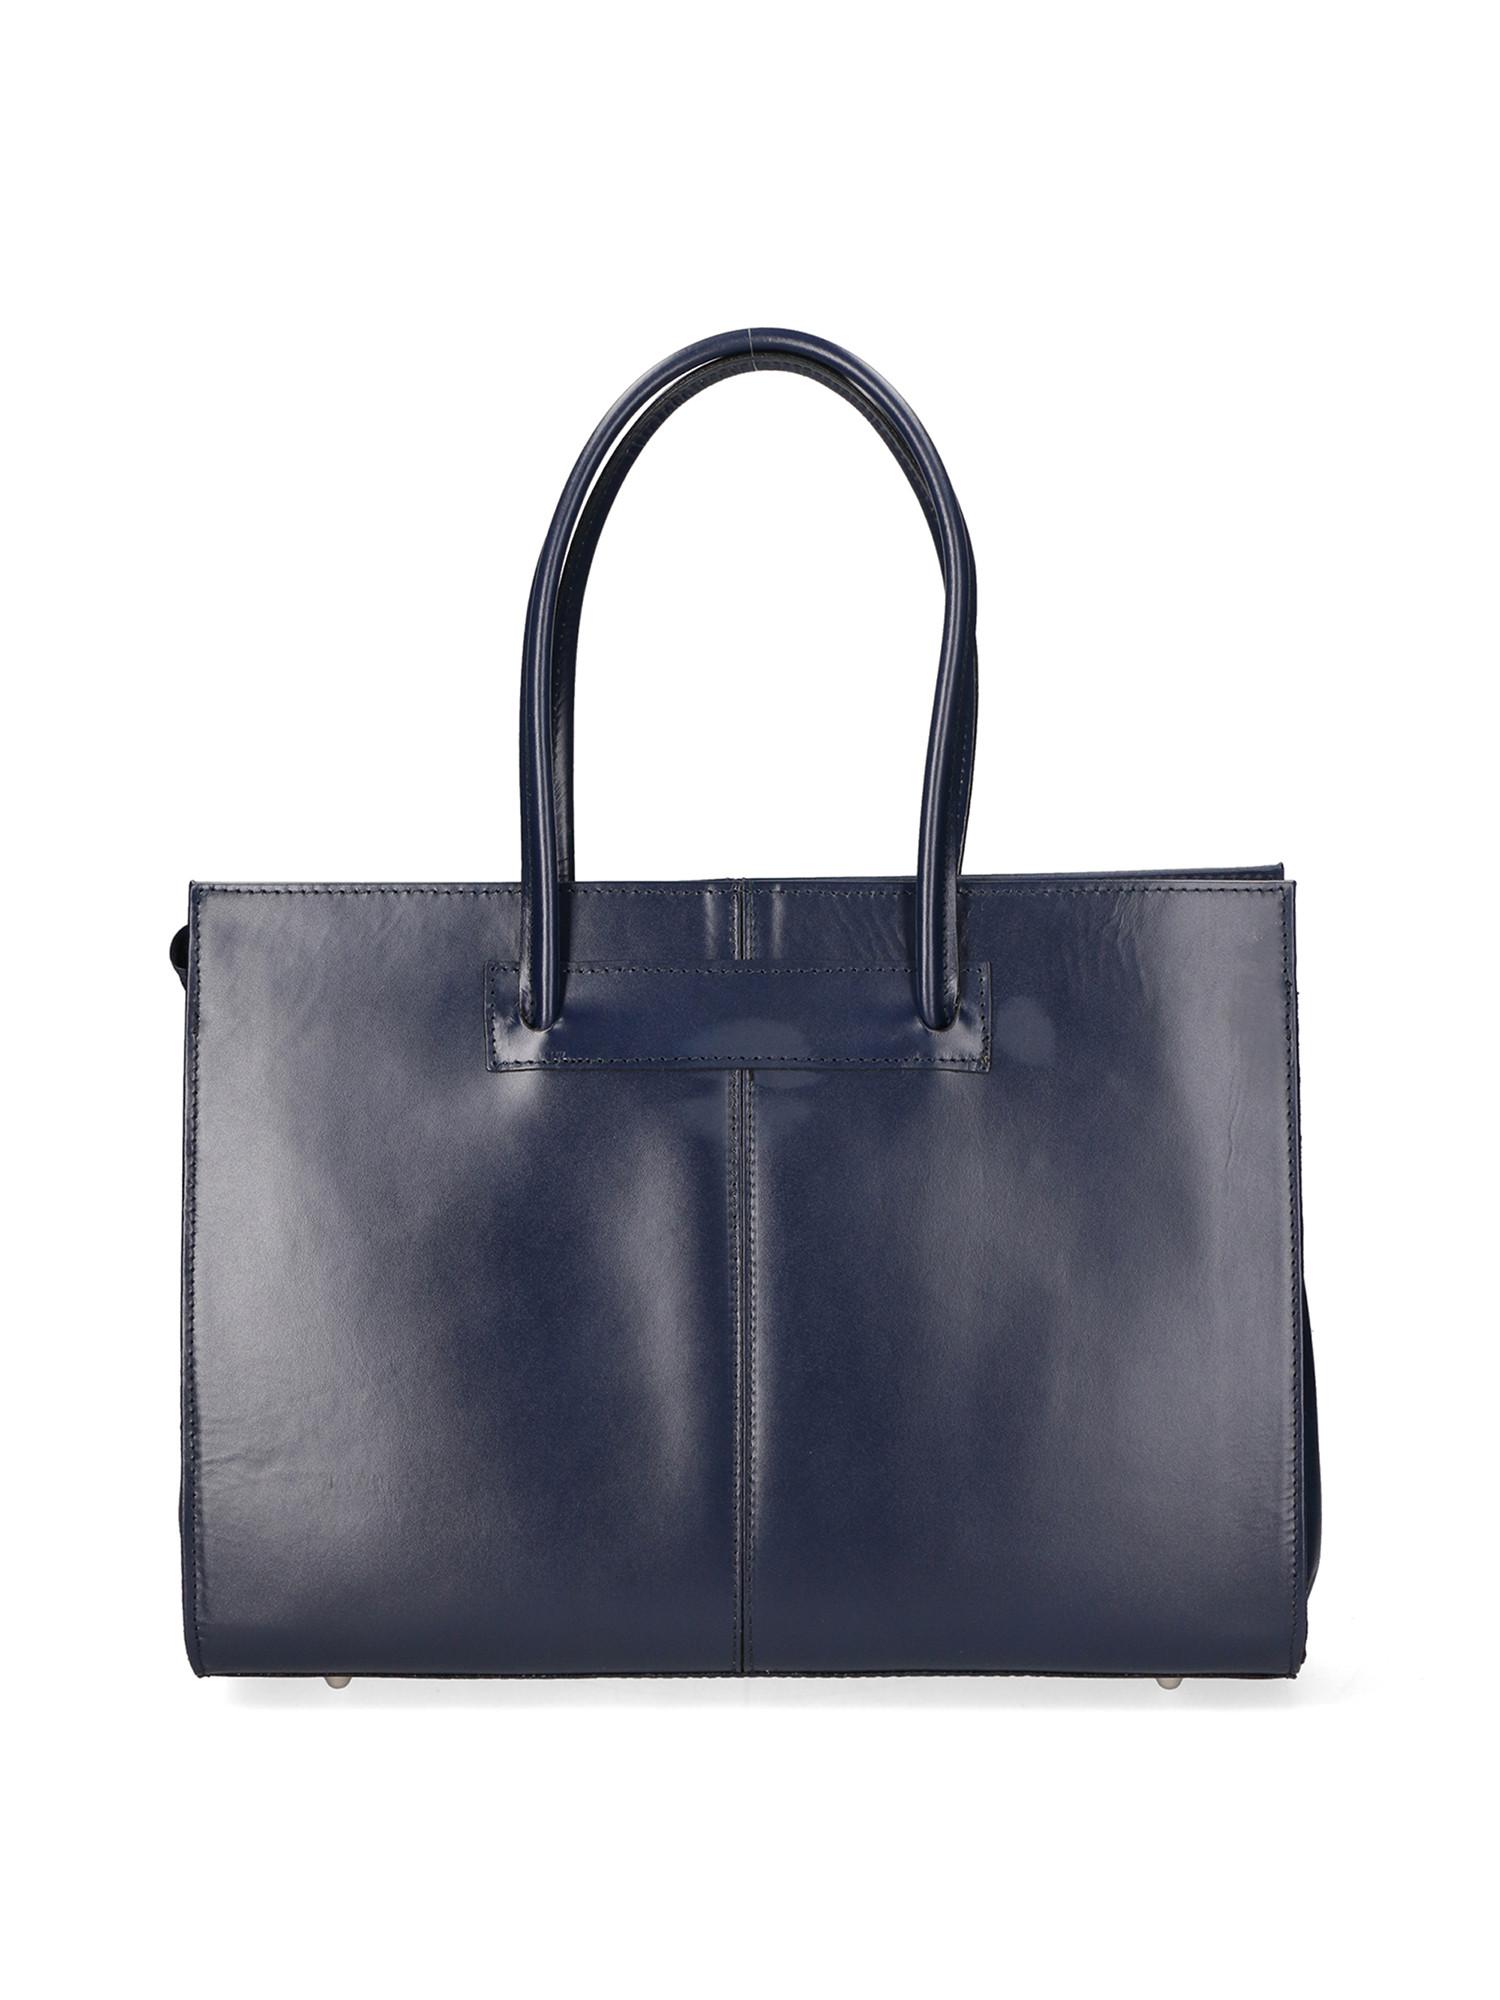 Handtasche Damen Blau ONE SIZE von Gave Lux